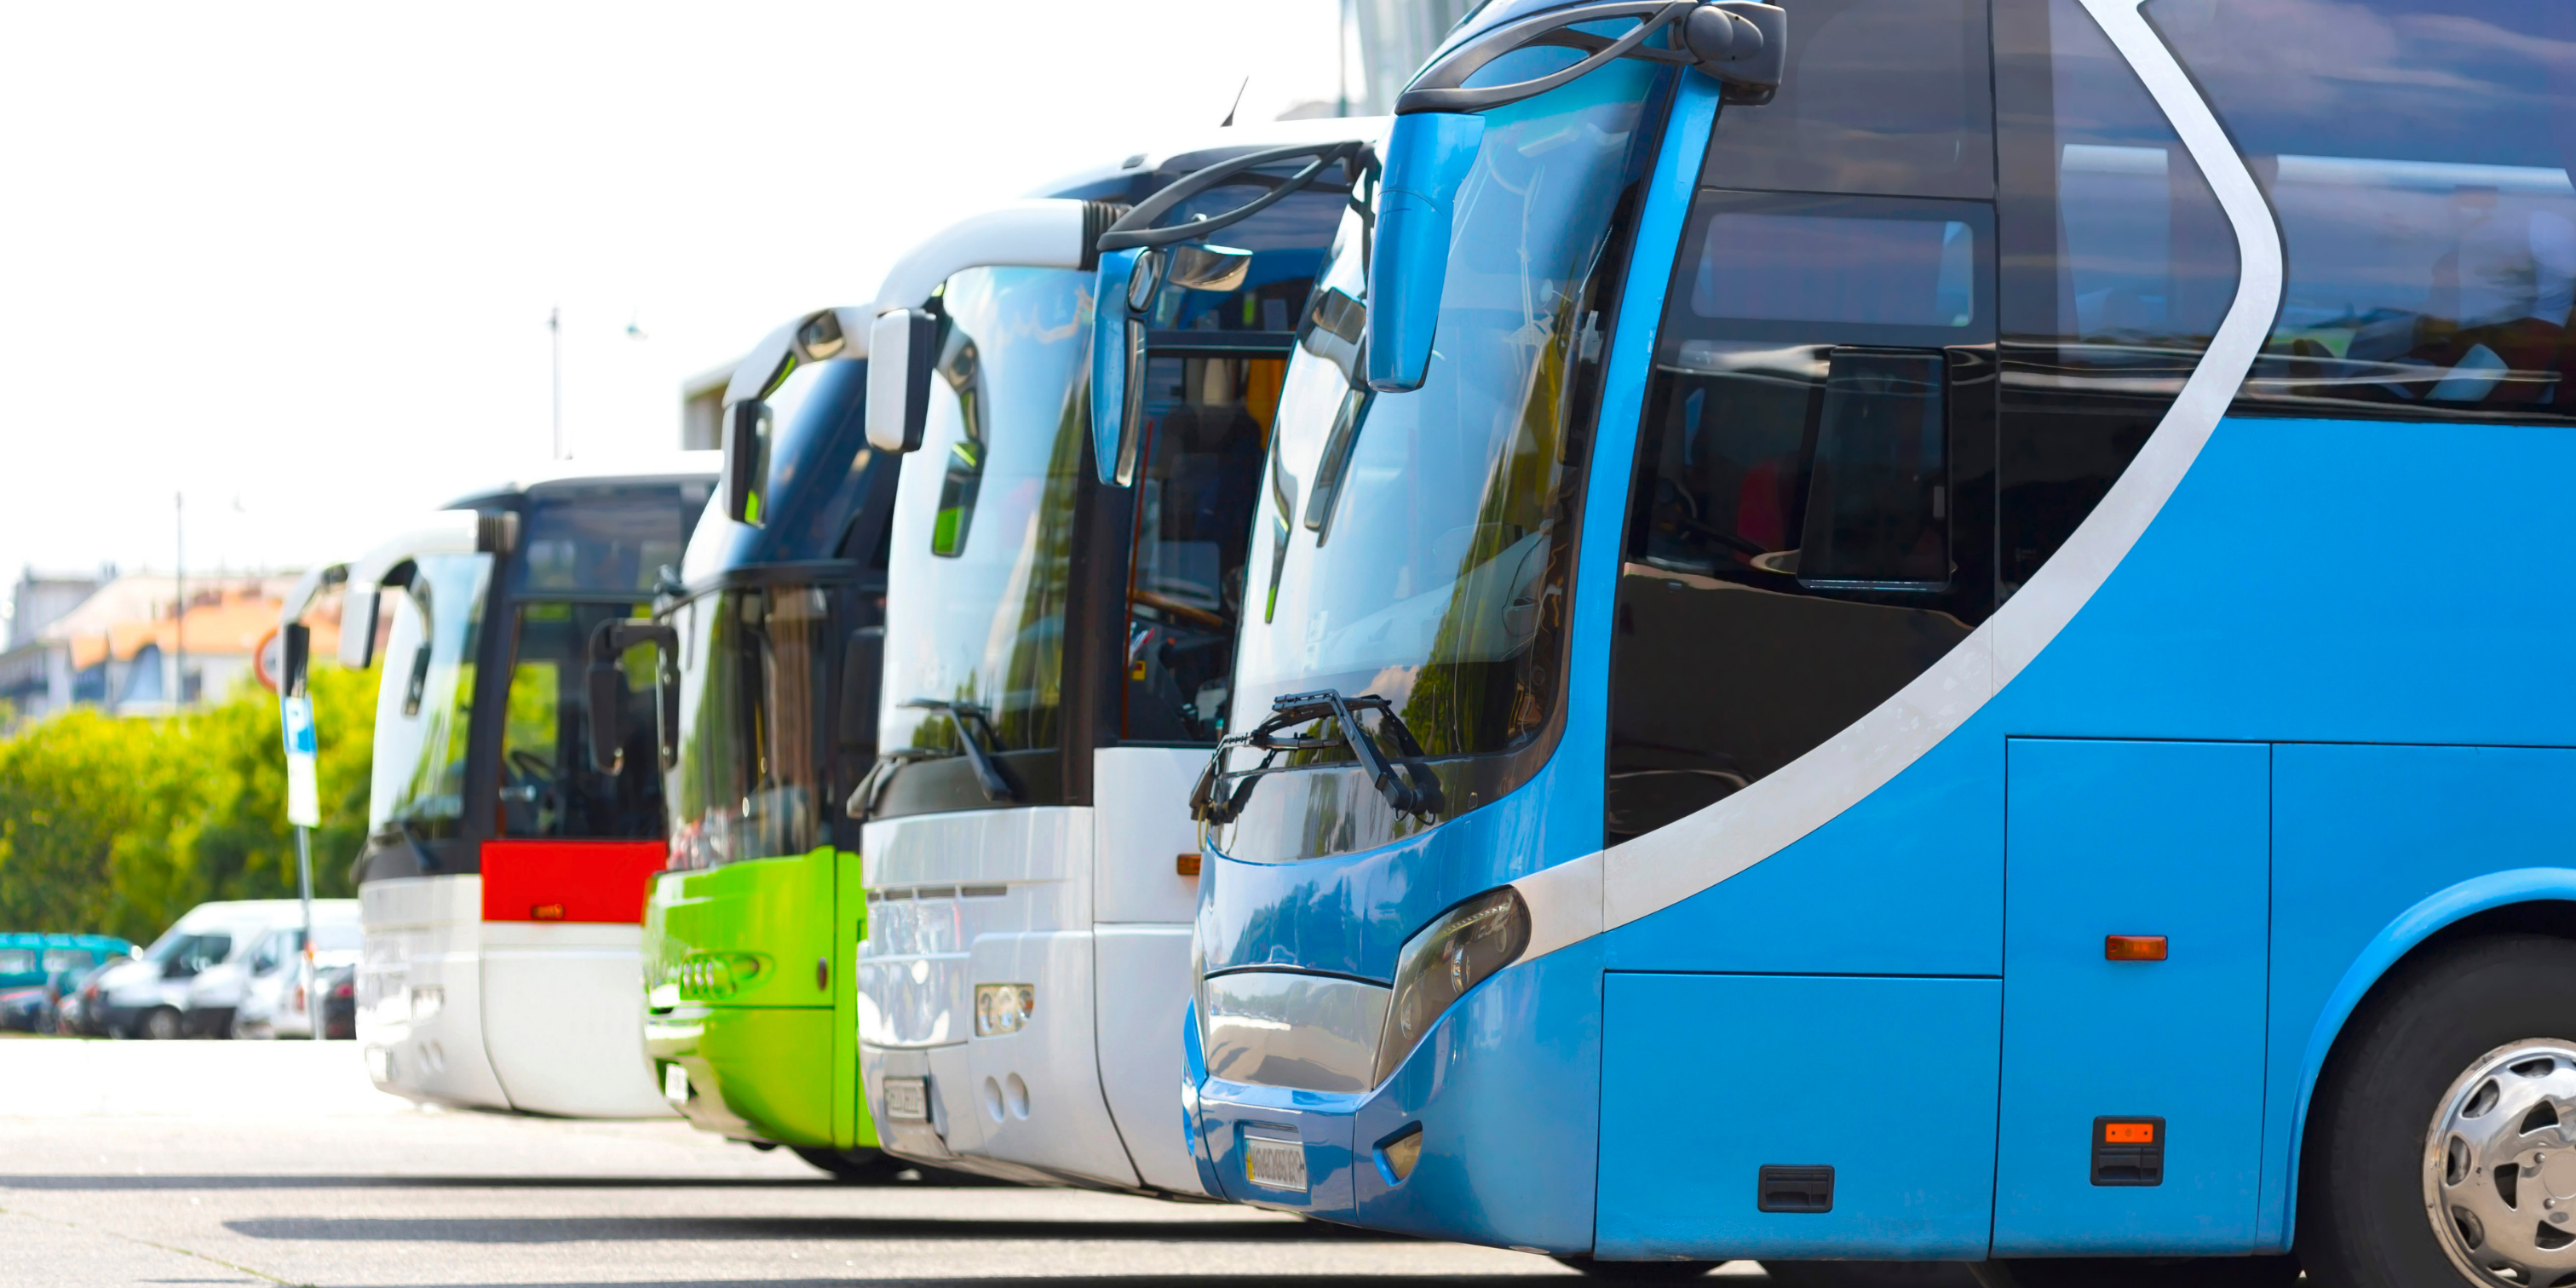 gestion flotte de bus réseau transports publics